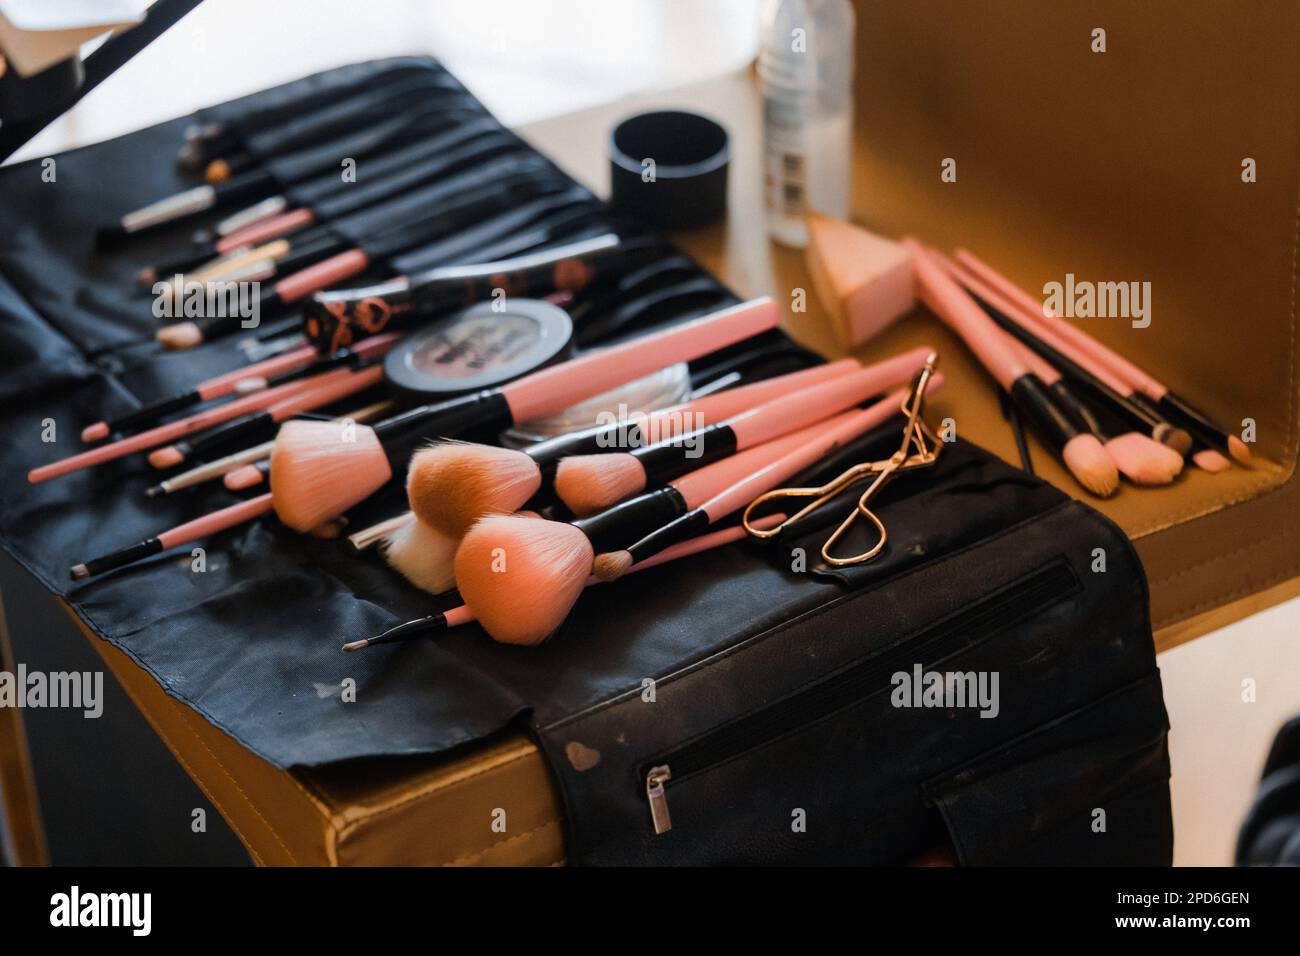 Make-up-Pinsel und Kosmetik auf dem Tisch im Schönheitssalon  Stockfotografie - Alamy